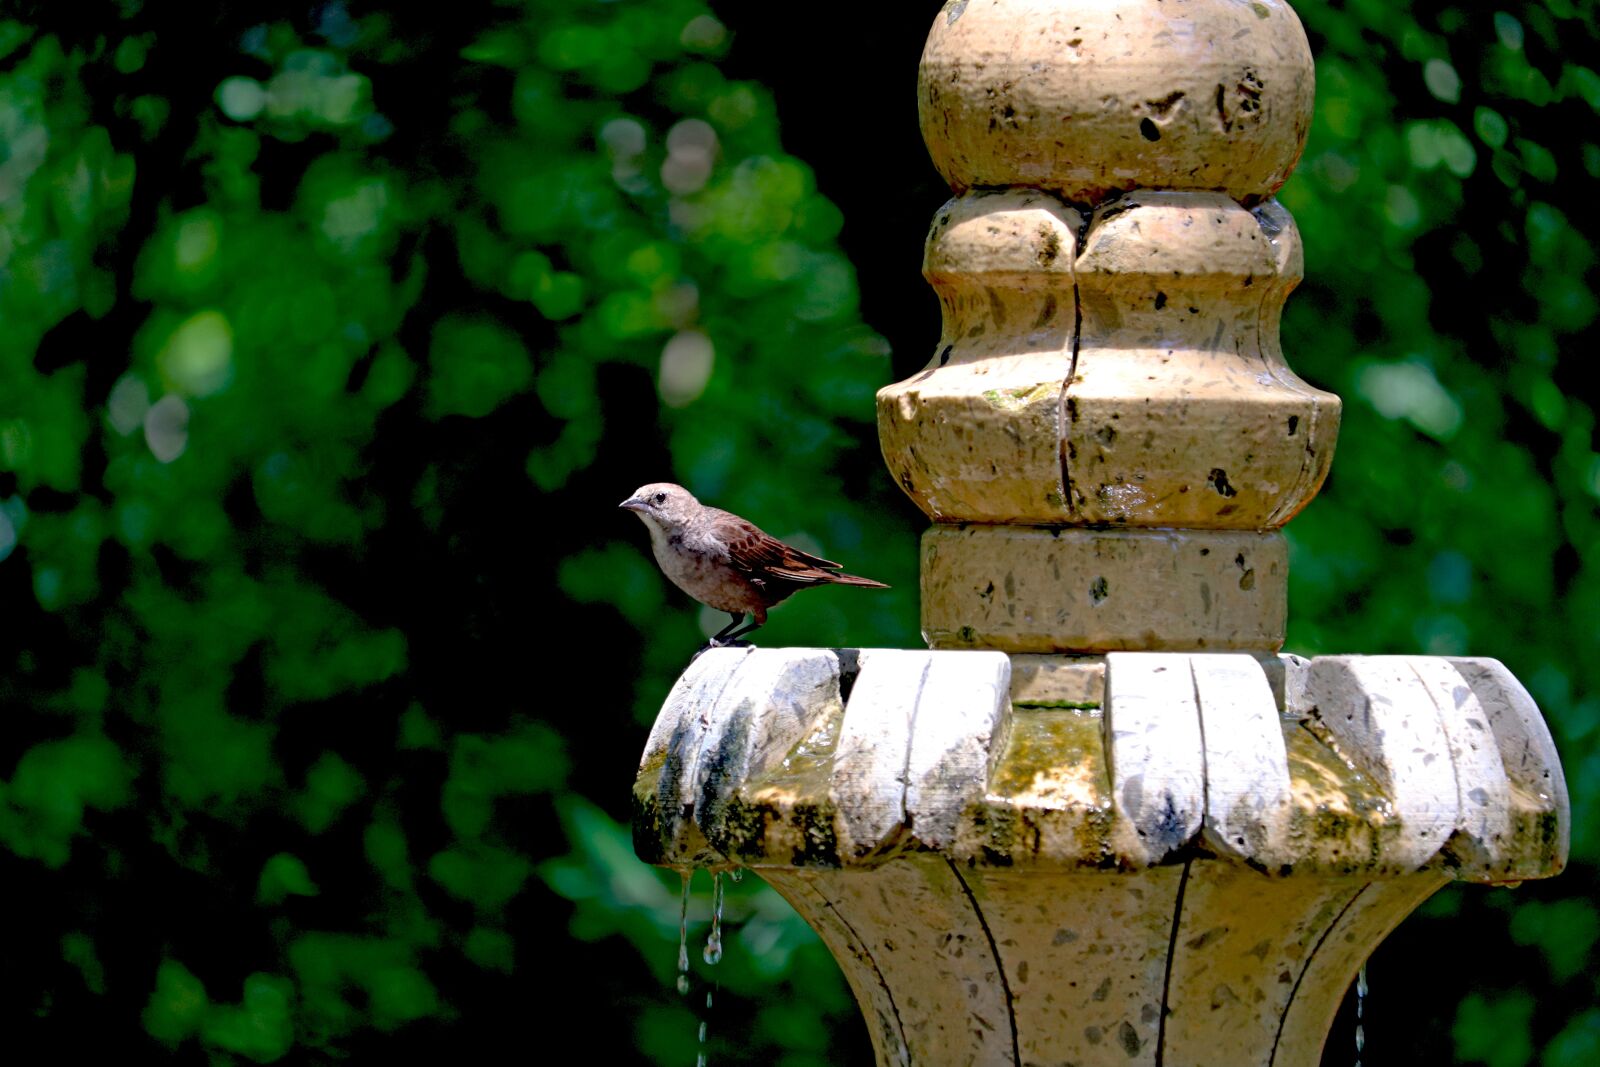 Canon EOS 800D (EOS Rebel T7i / EOS Kiss X9i) sample photo. Bird, fountain, backyard photography